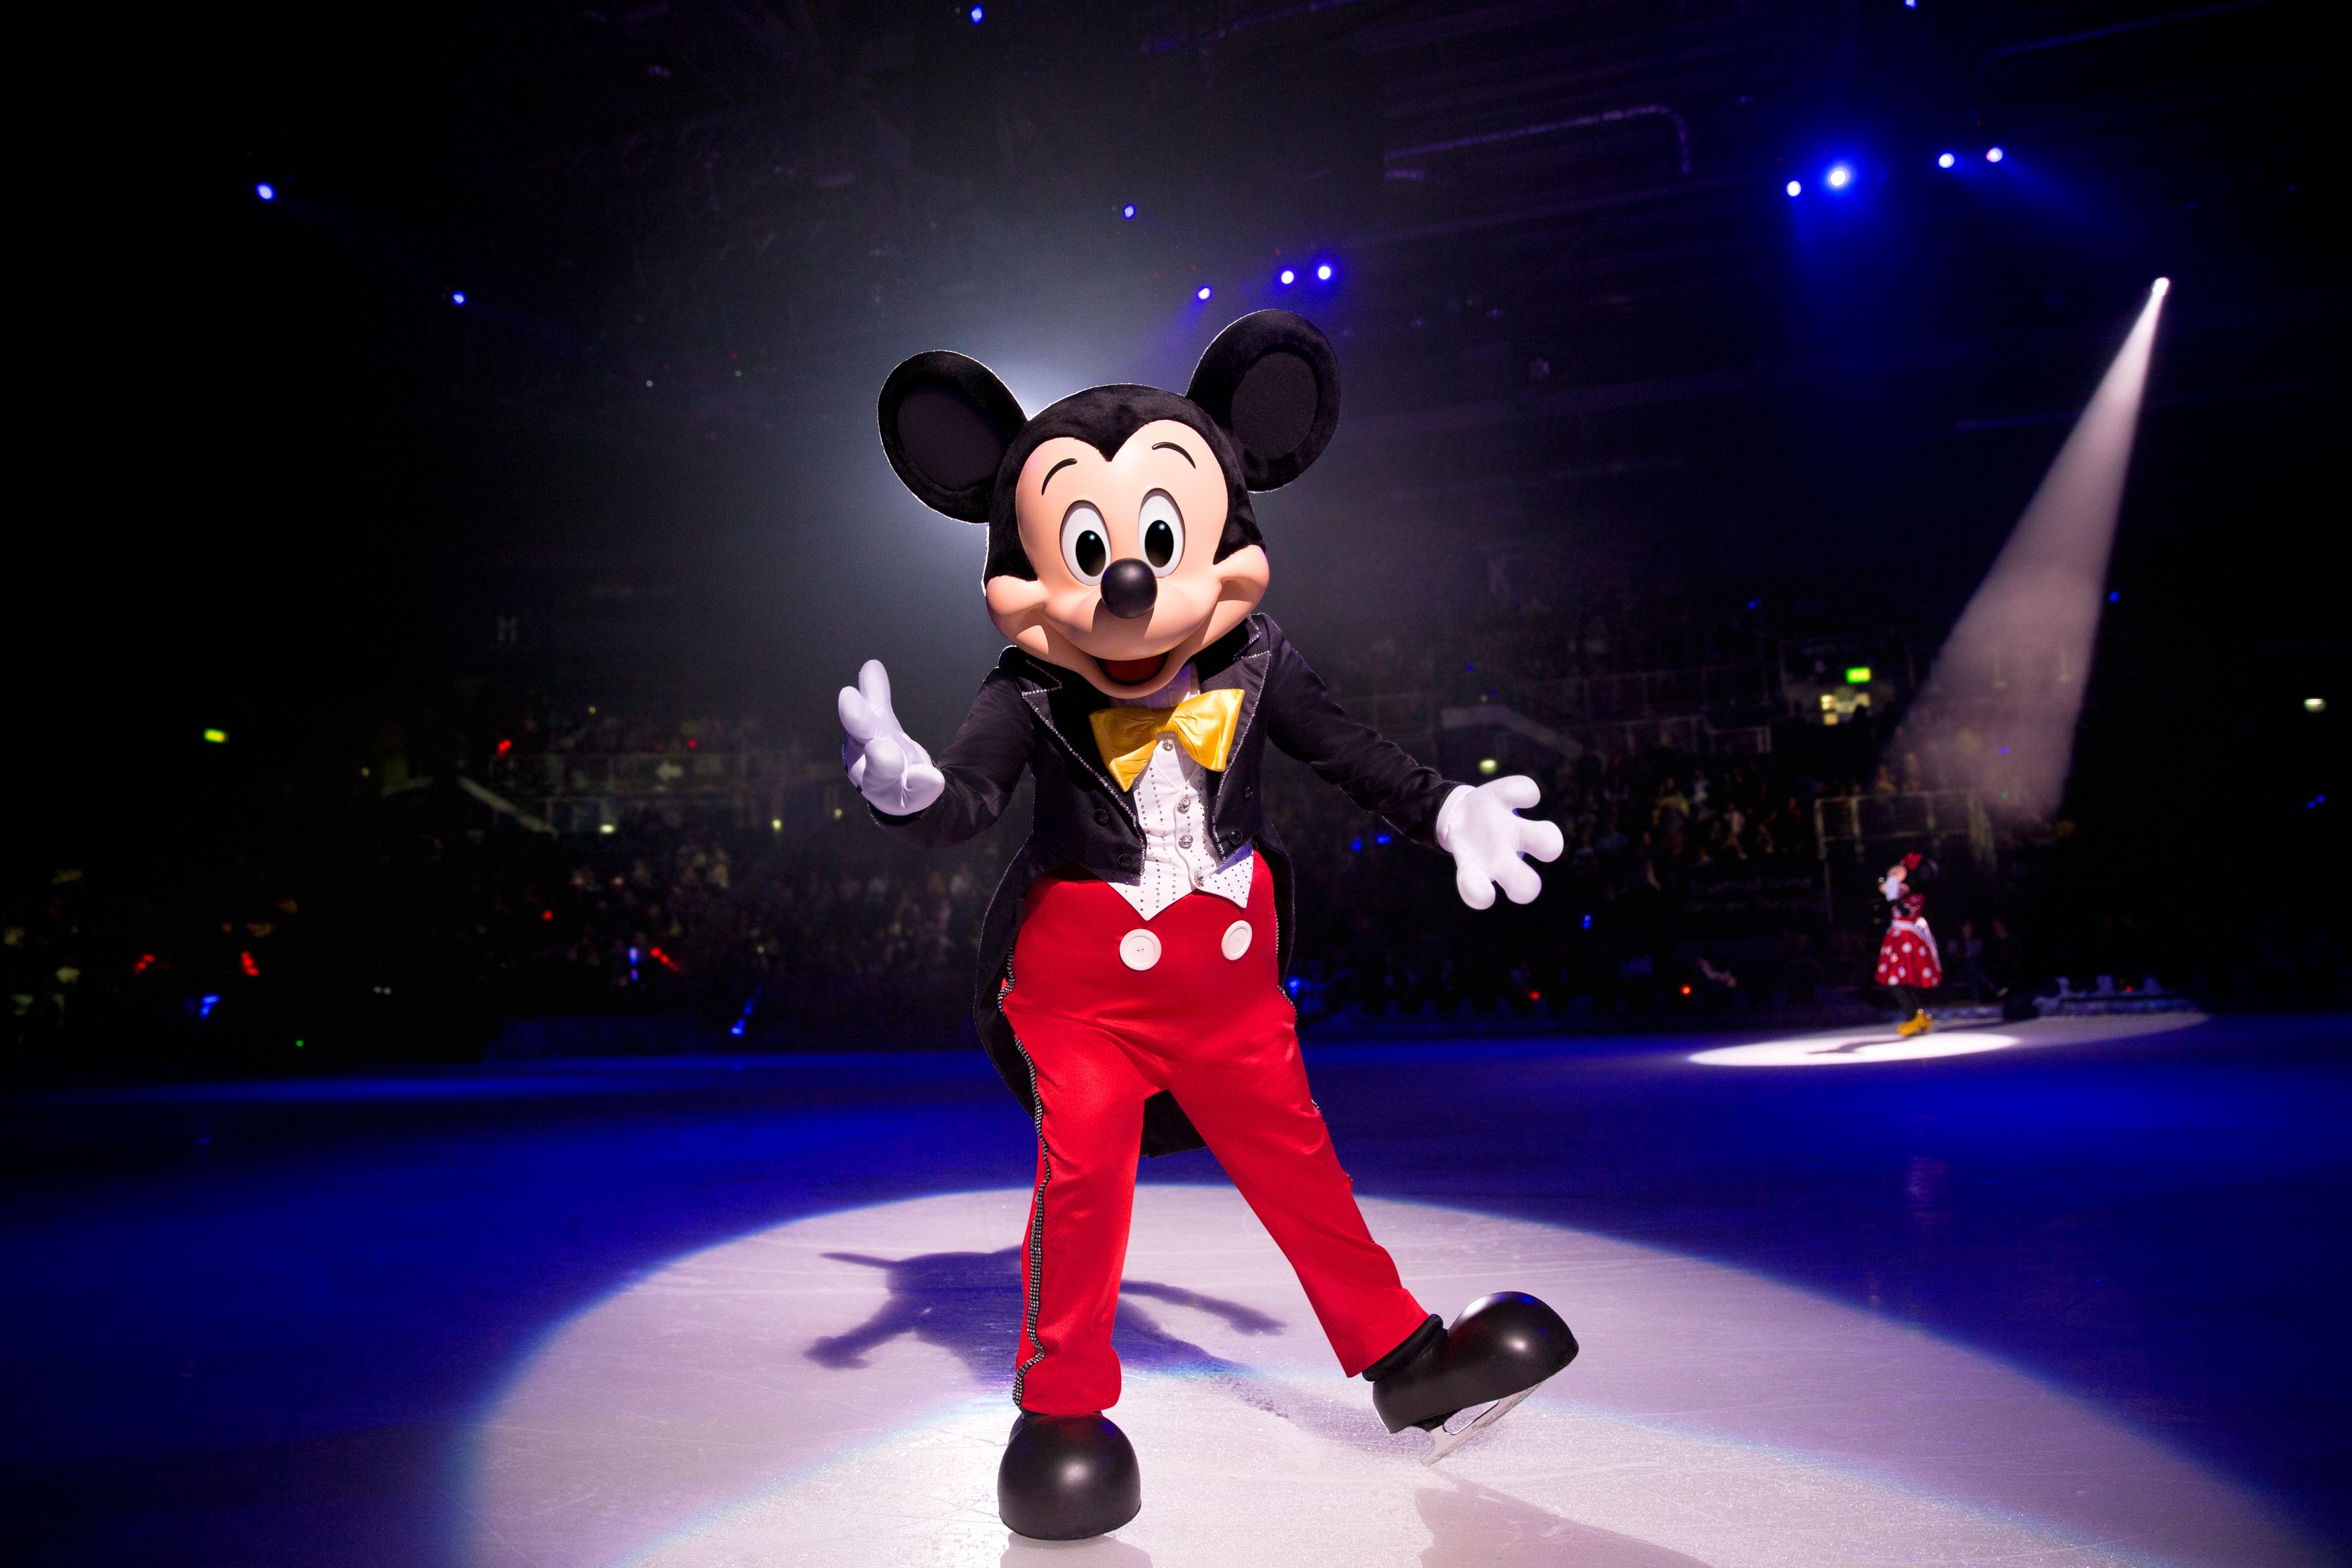 Une mascotte Disney habillée en Mickey Mouse glissant gracieusement sur une patinoire.